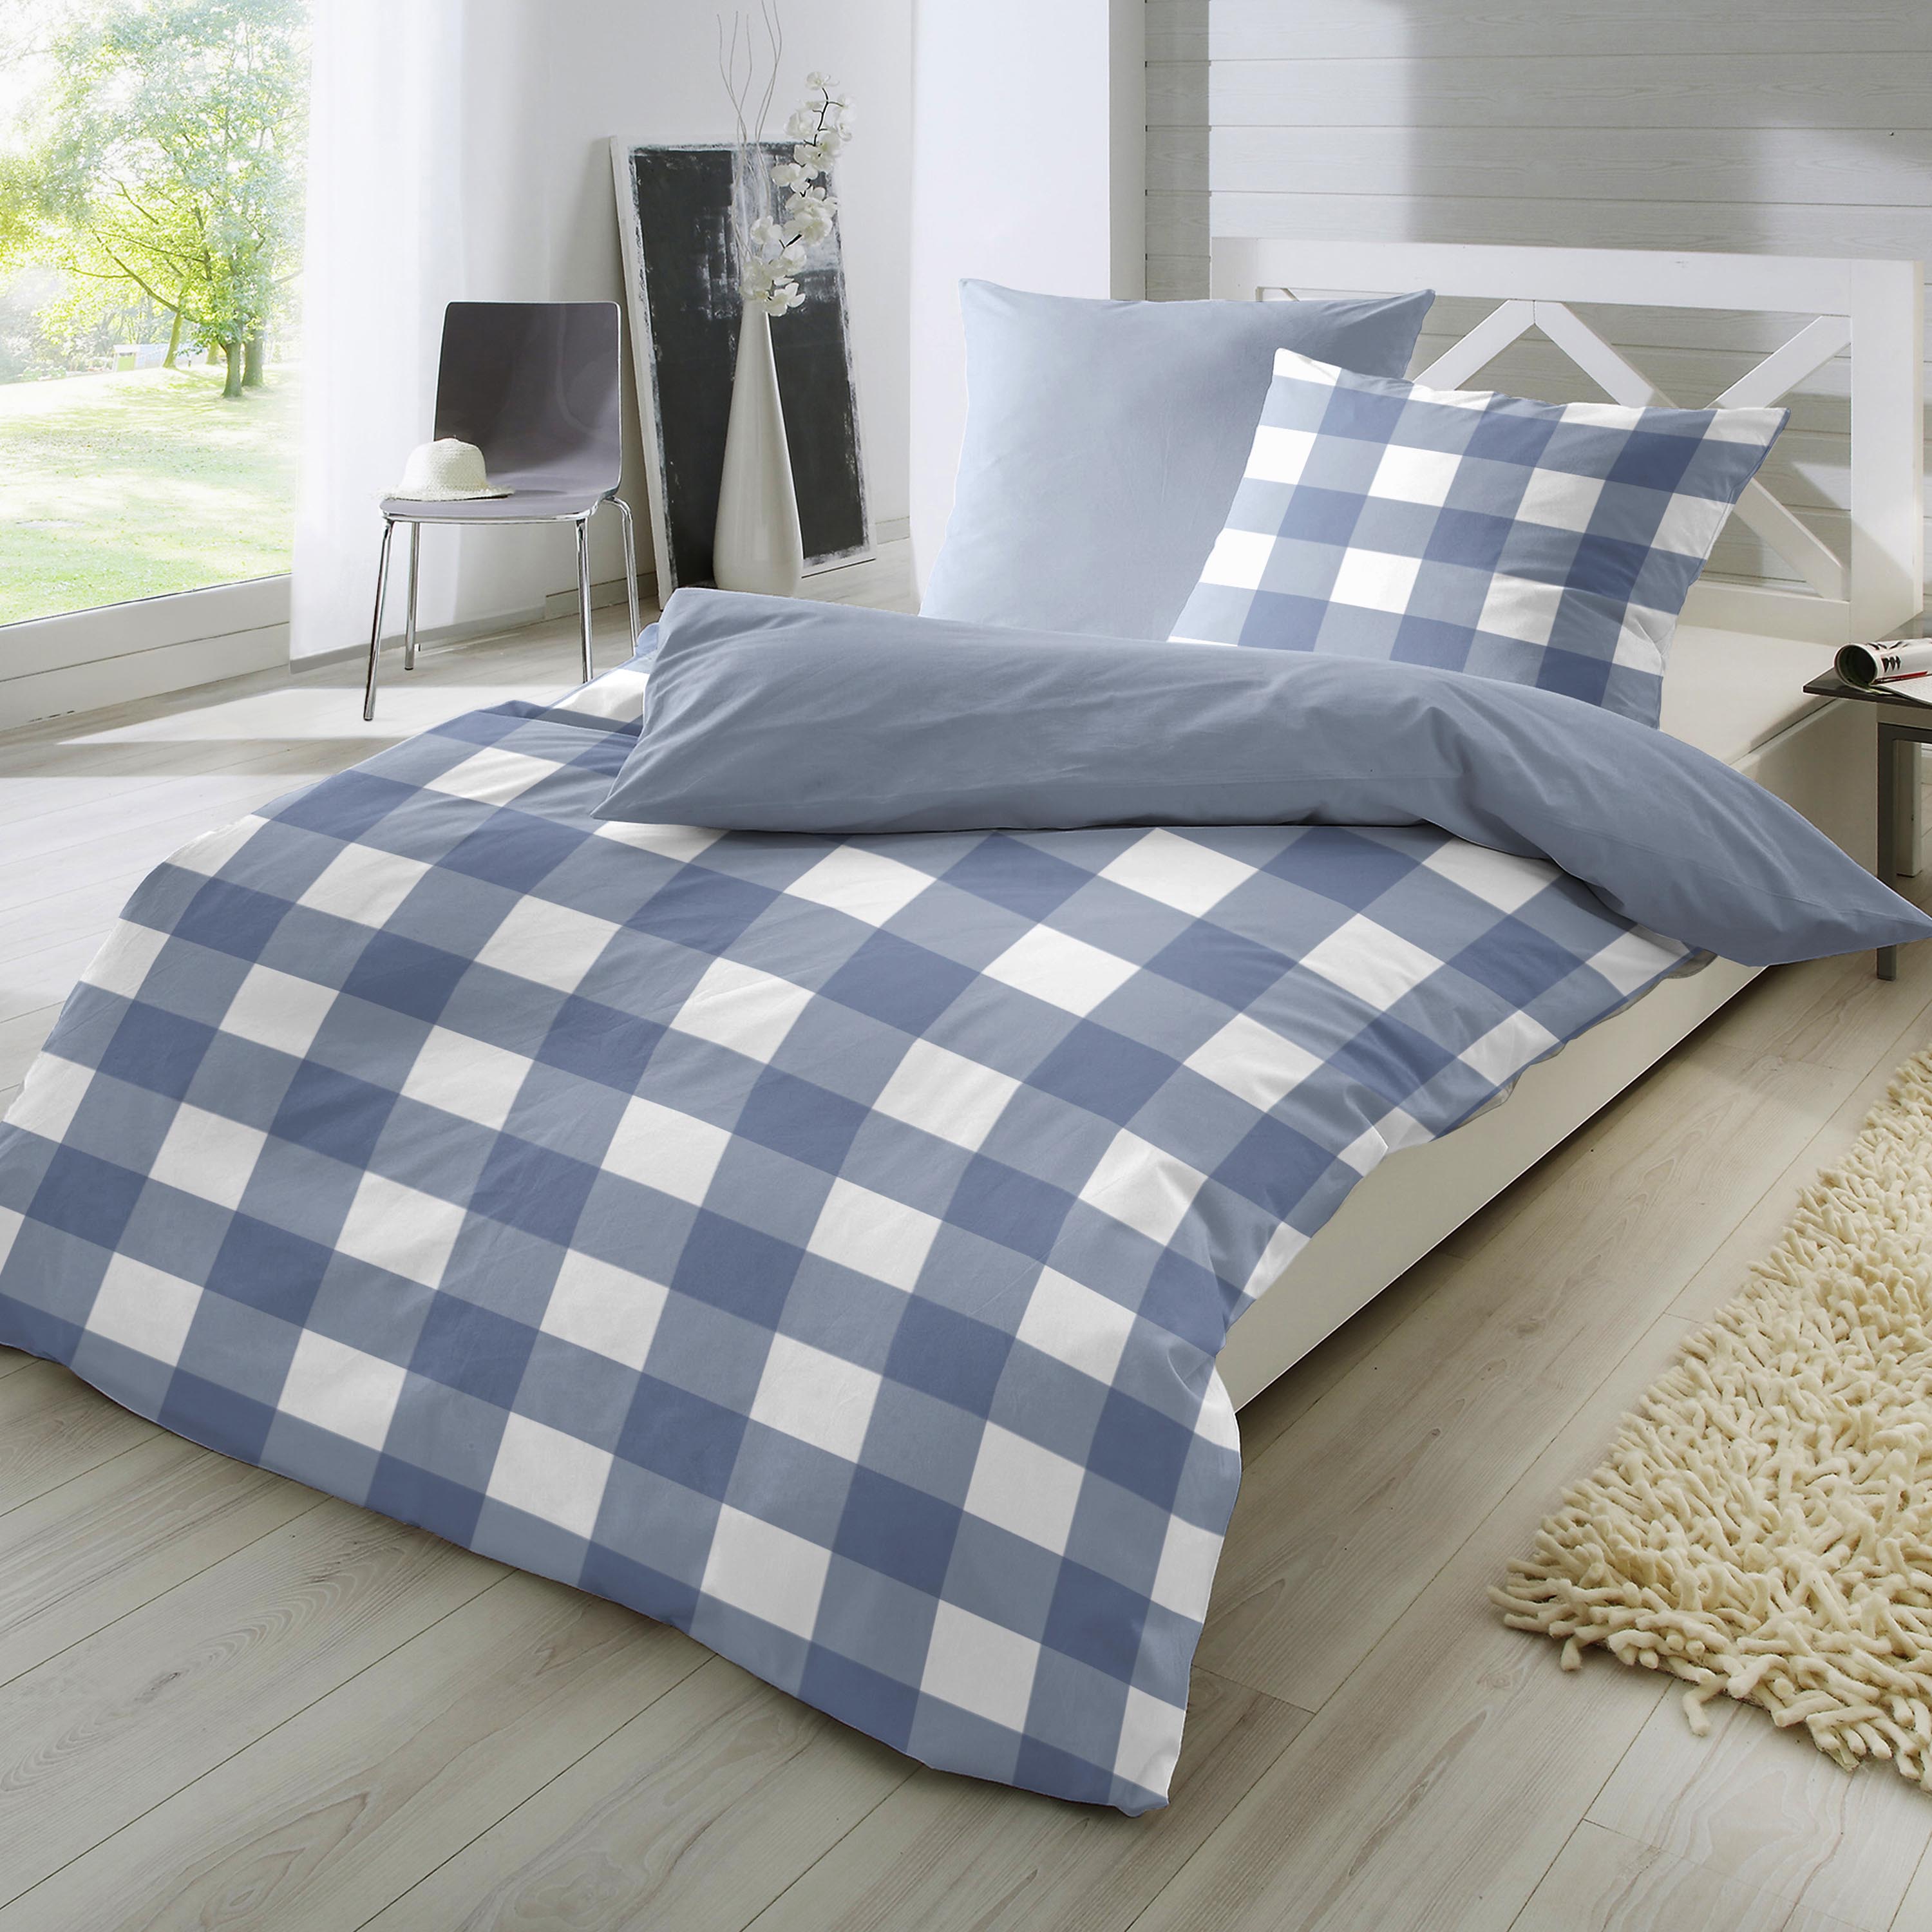 Traumhaft gut schlafen – Perkal-Bettwäsche, 2-teilig, mit Karo-Muster, versch. Farben und Größen 